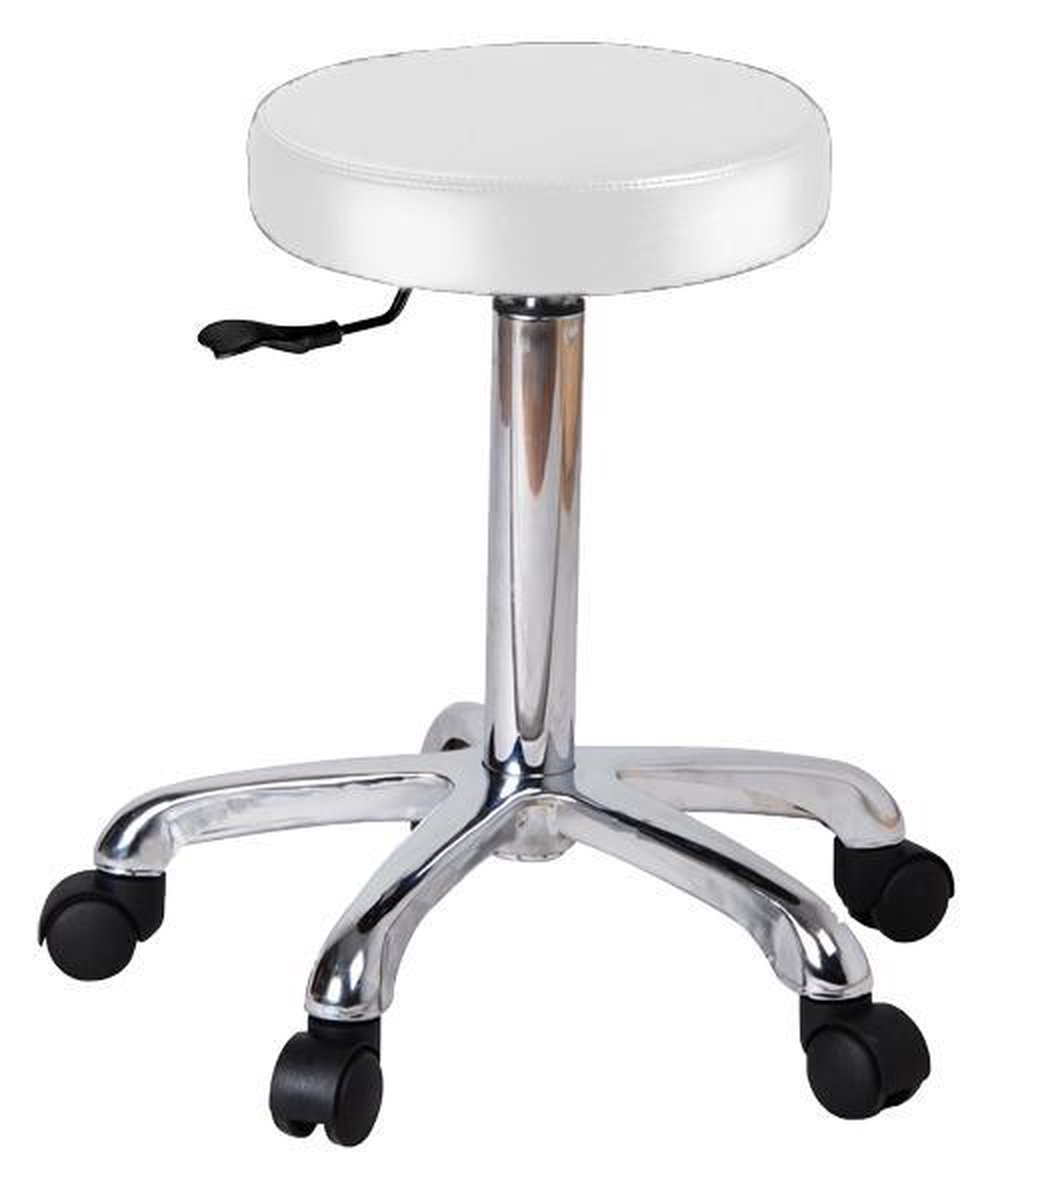 Kruk basickruk kapperskruk barkruk bureaustoel hoogteverstelbaar extra stevig onderstel